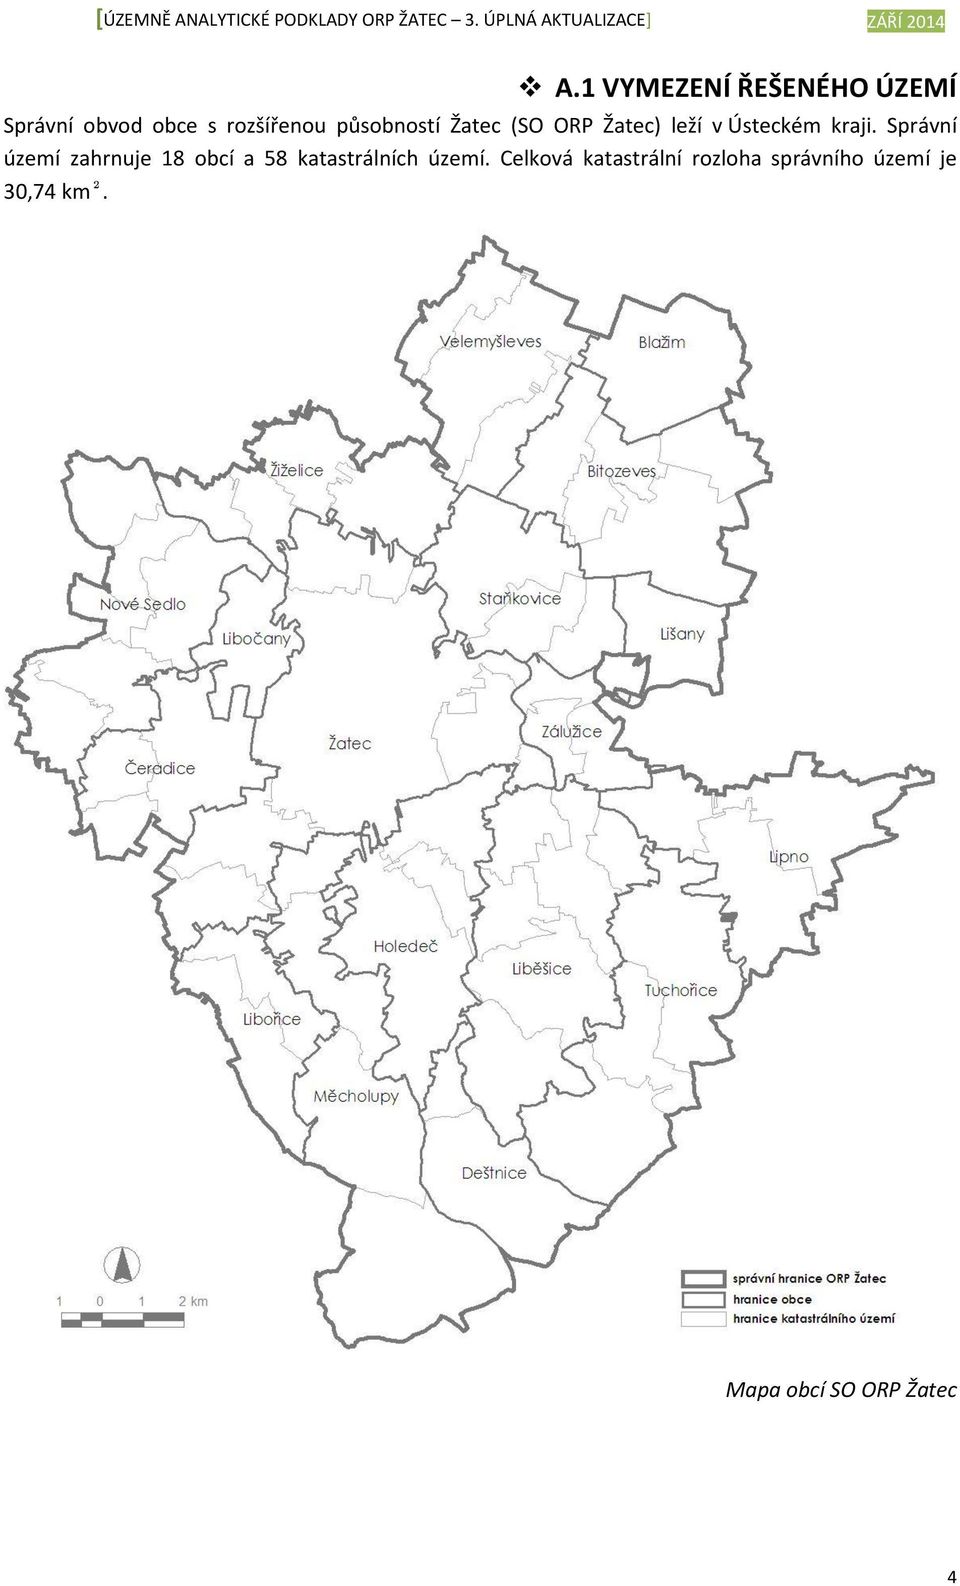 Správní území zahrnuje 18 obcí a 58 katastrálních území.